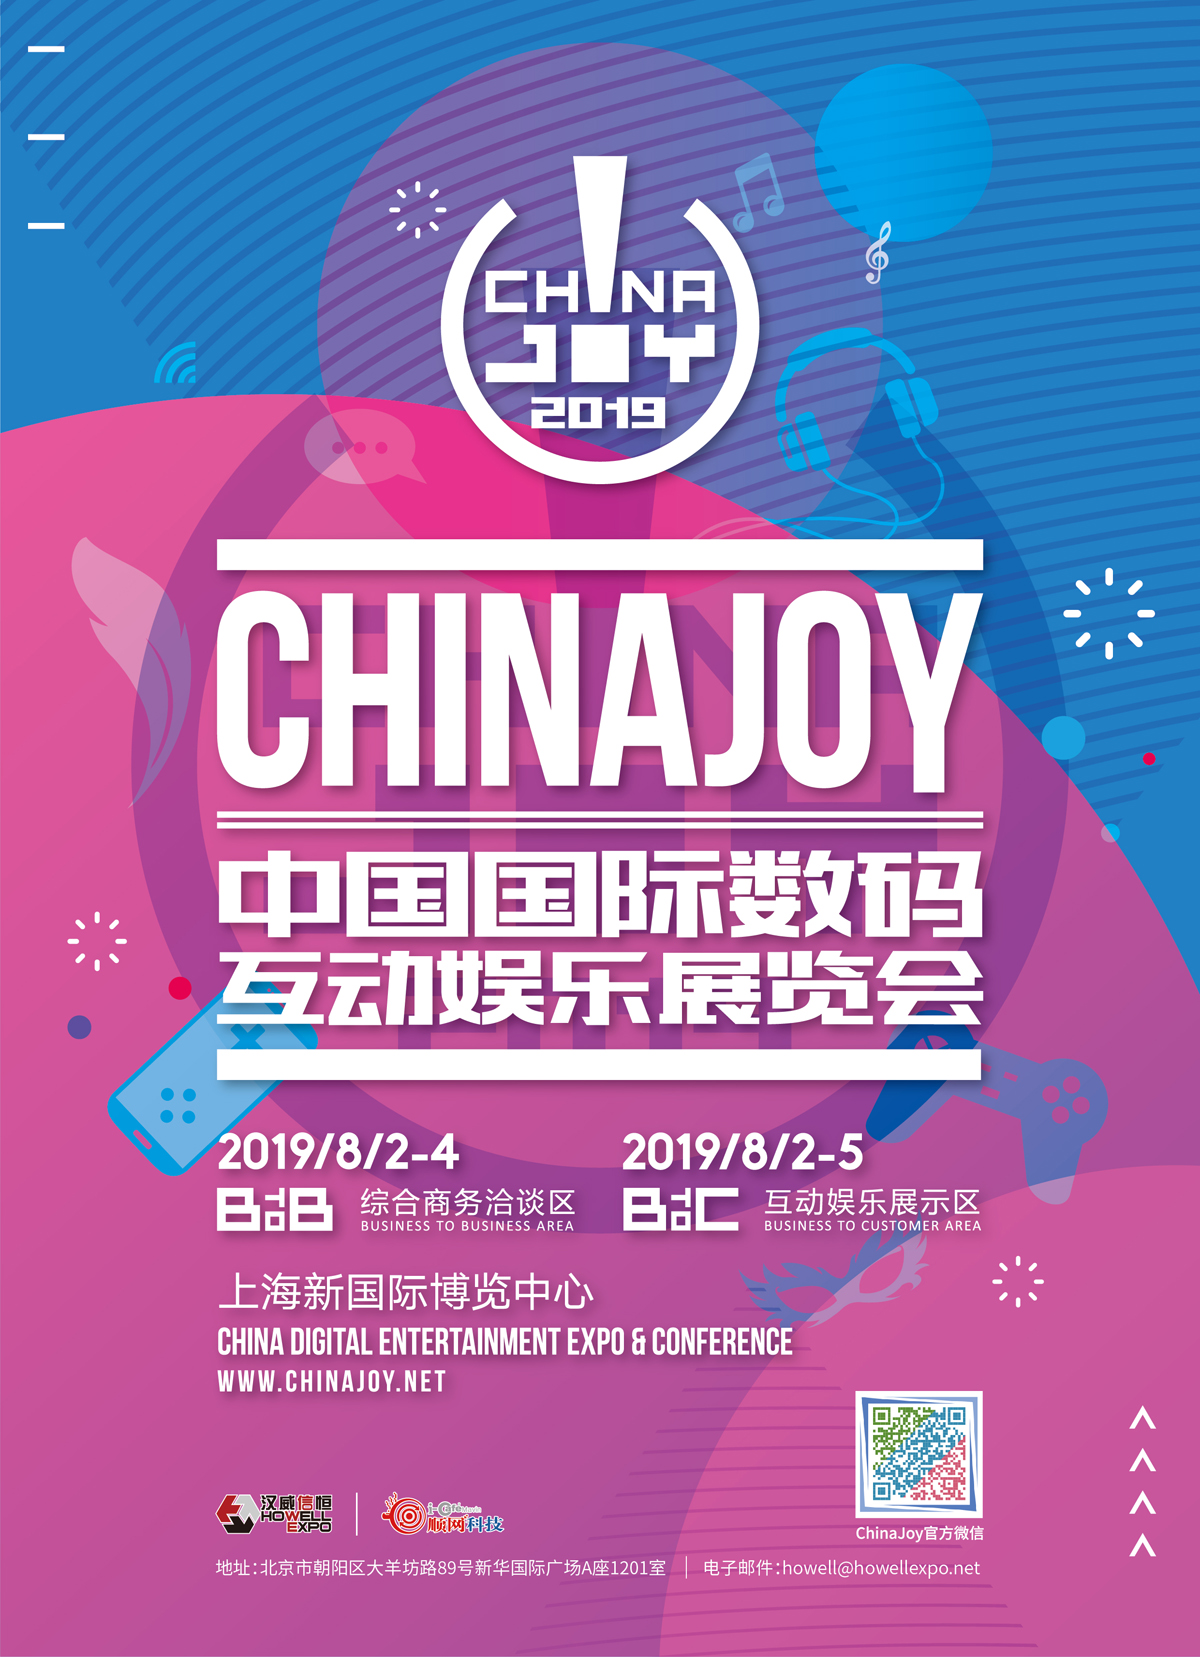 数据助力手游！热云数据确认参展2019 ChinaJoy BTOB！